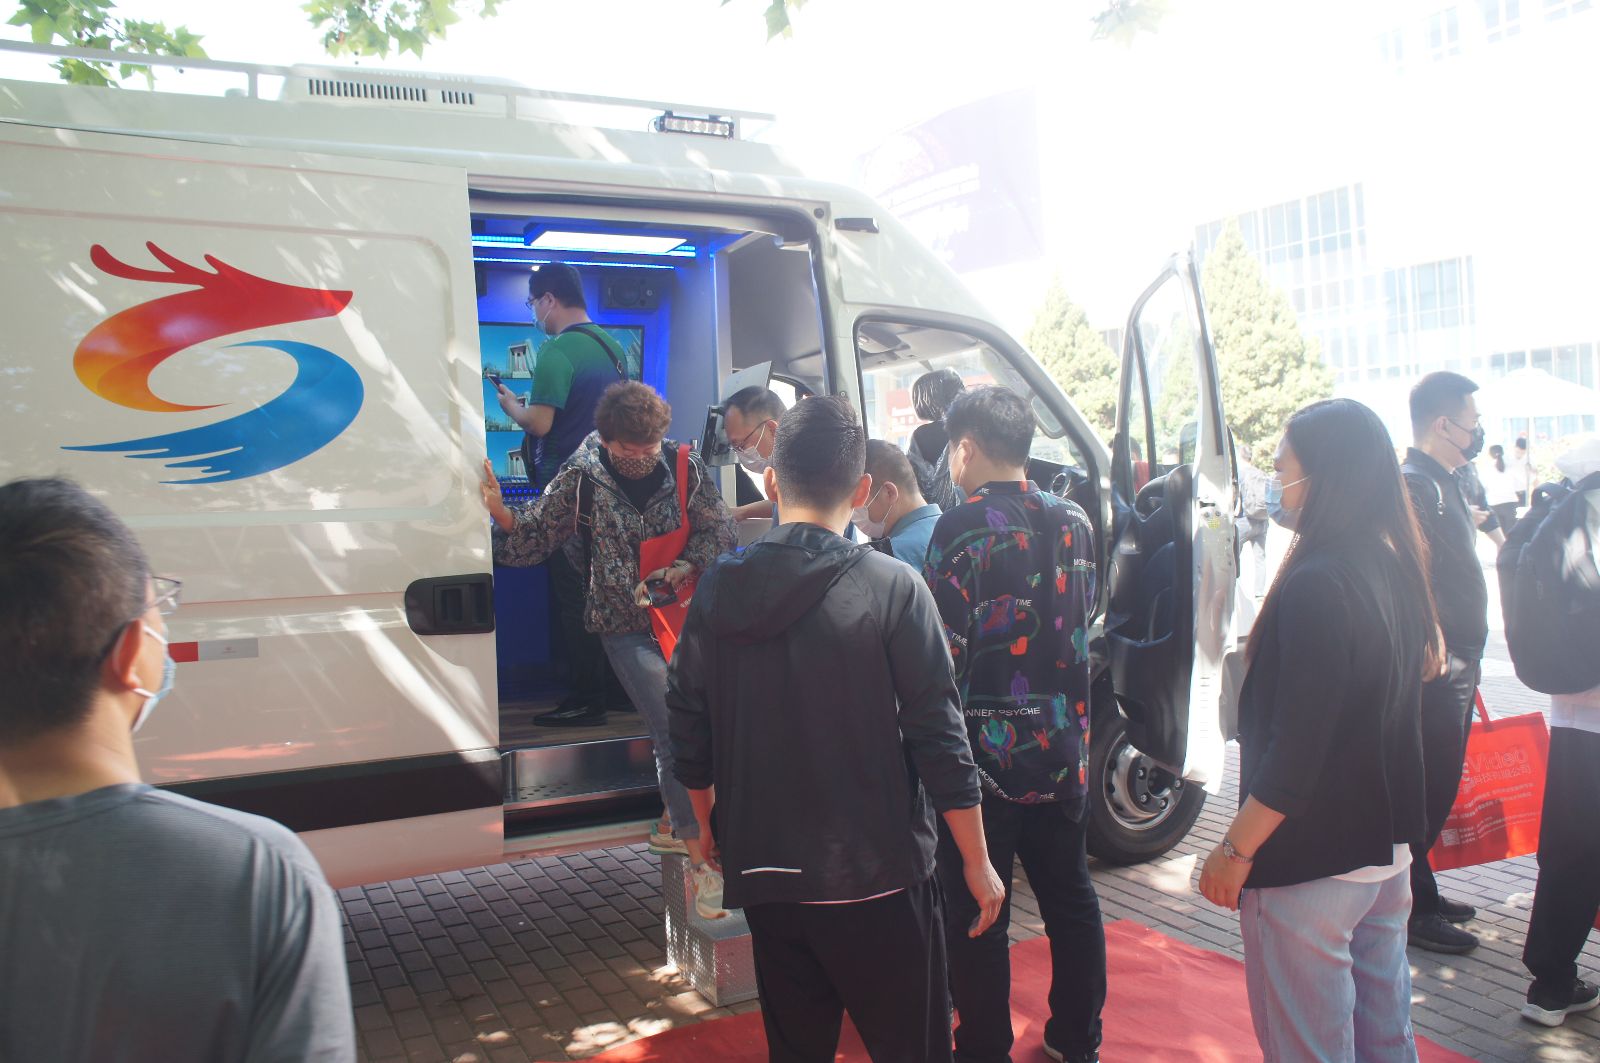 北京科锐广视公司携最新打造的 4K+5G 融媒体直播车、新媒体 IP 化 4K 超高清直播车参加了此次会展。